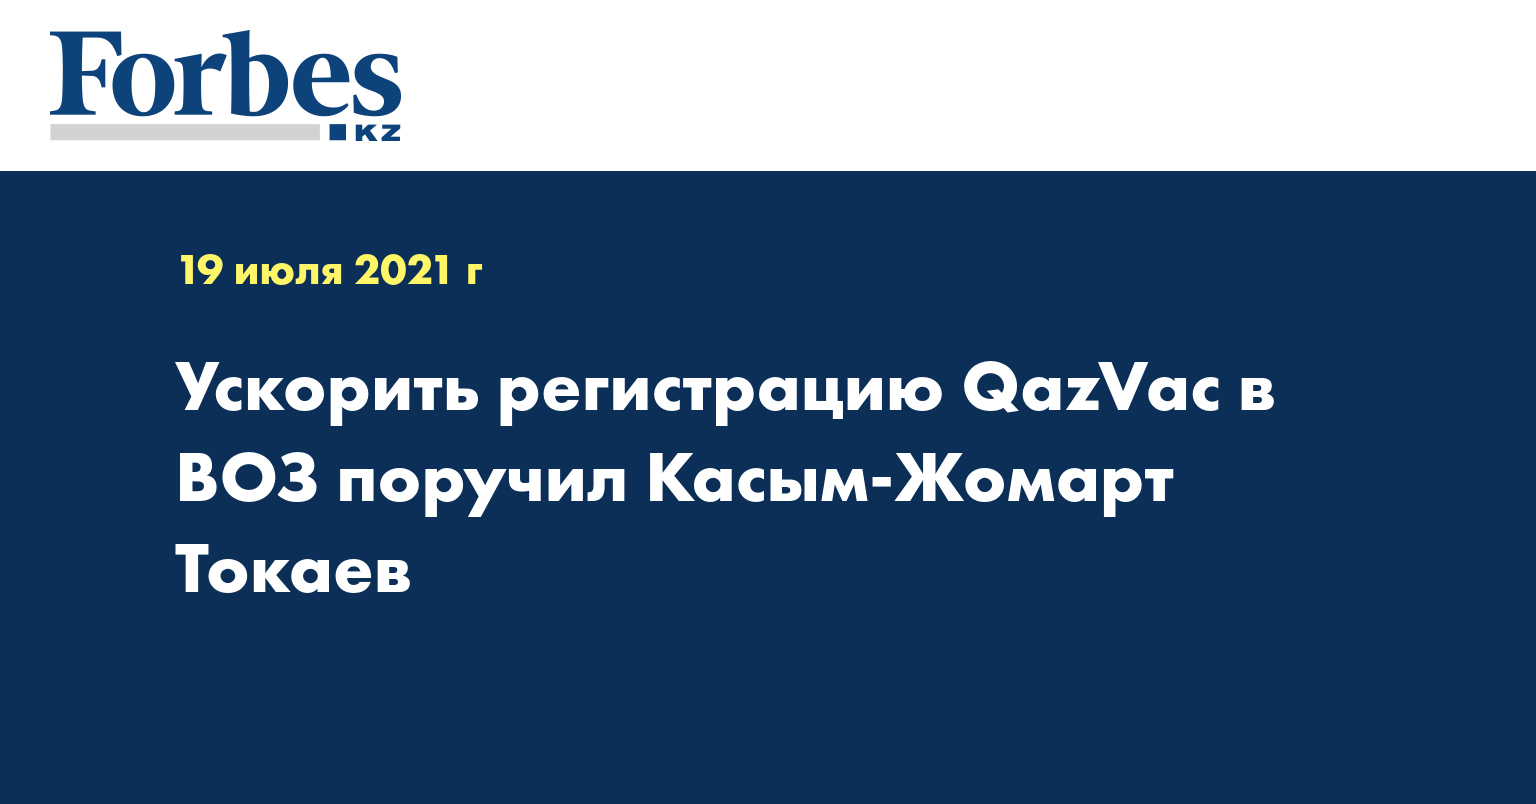  Ускорить регистрацию QazVac в ВОЗ поручил Касым-Жомарт Токаев